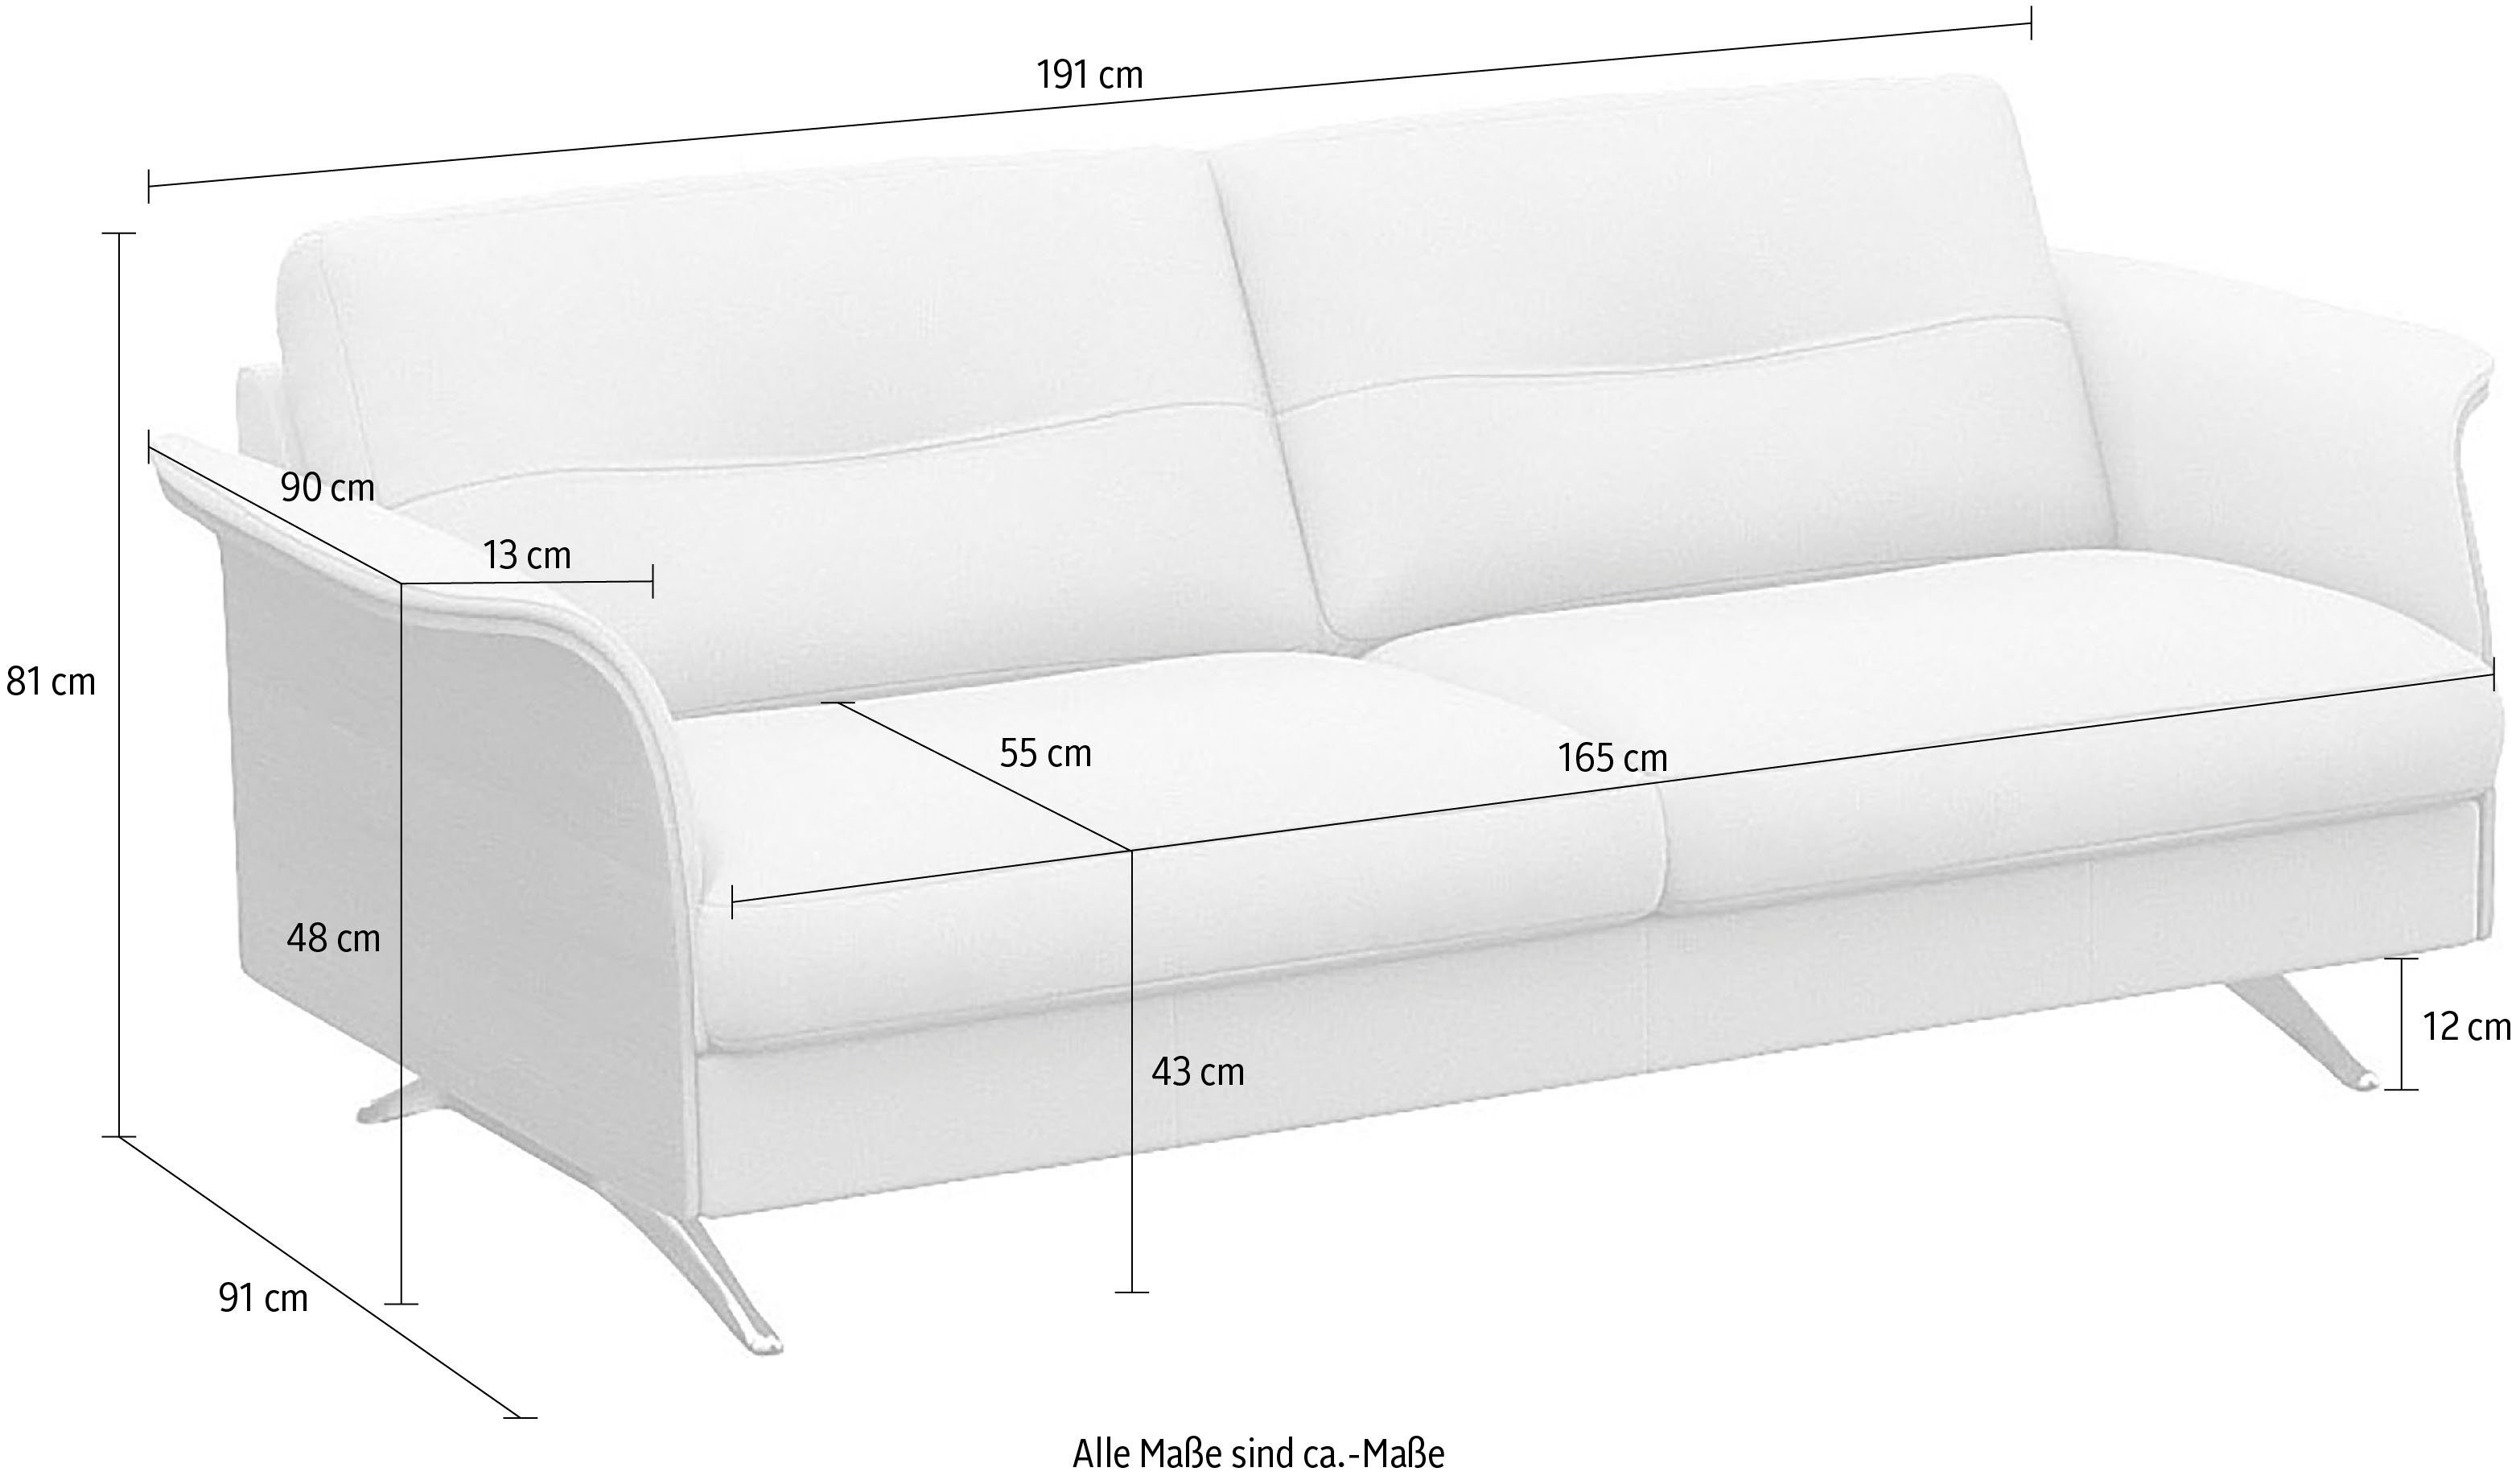 Glow, Theca Furniture FLEXLUX UAB 2,5-Sitzer